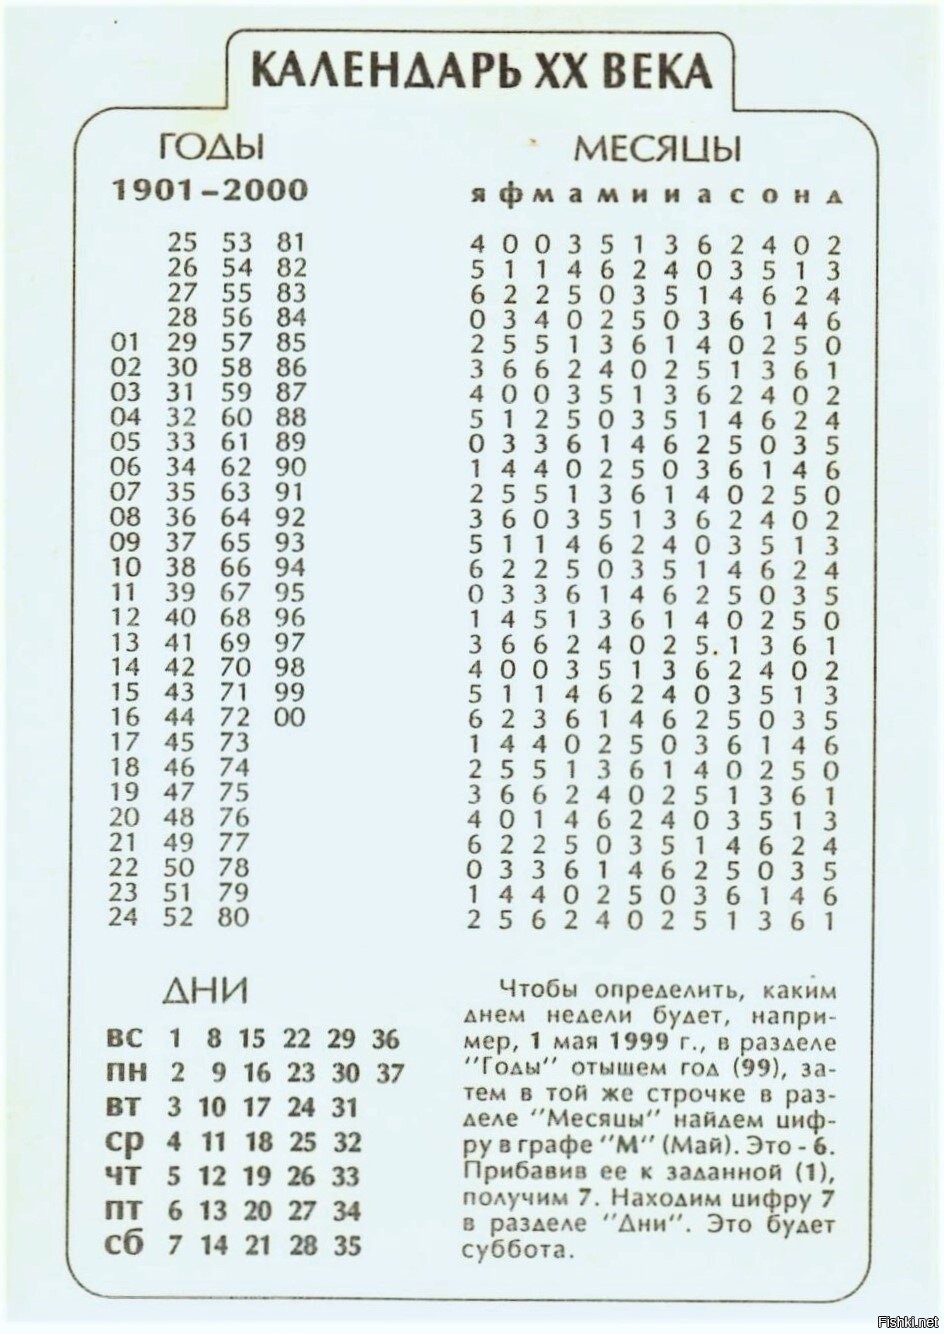 Нашел у себя "Календарь ХХ века", как открыточка, покупал в книжном магазине ...